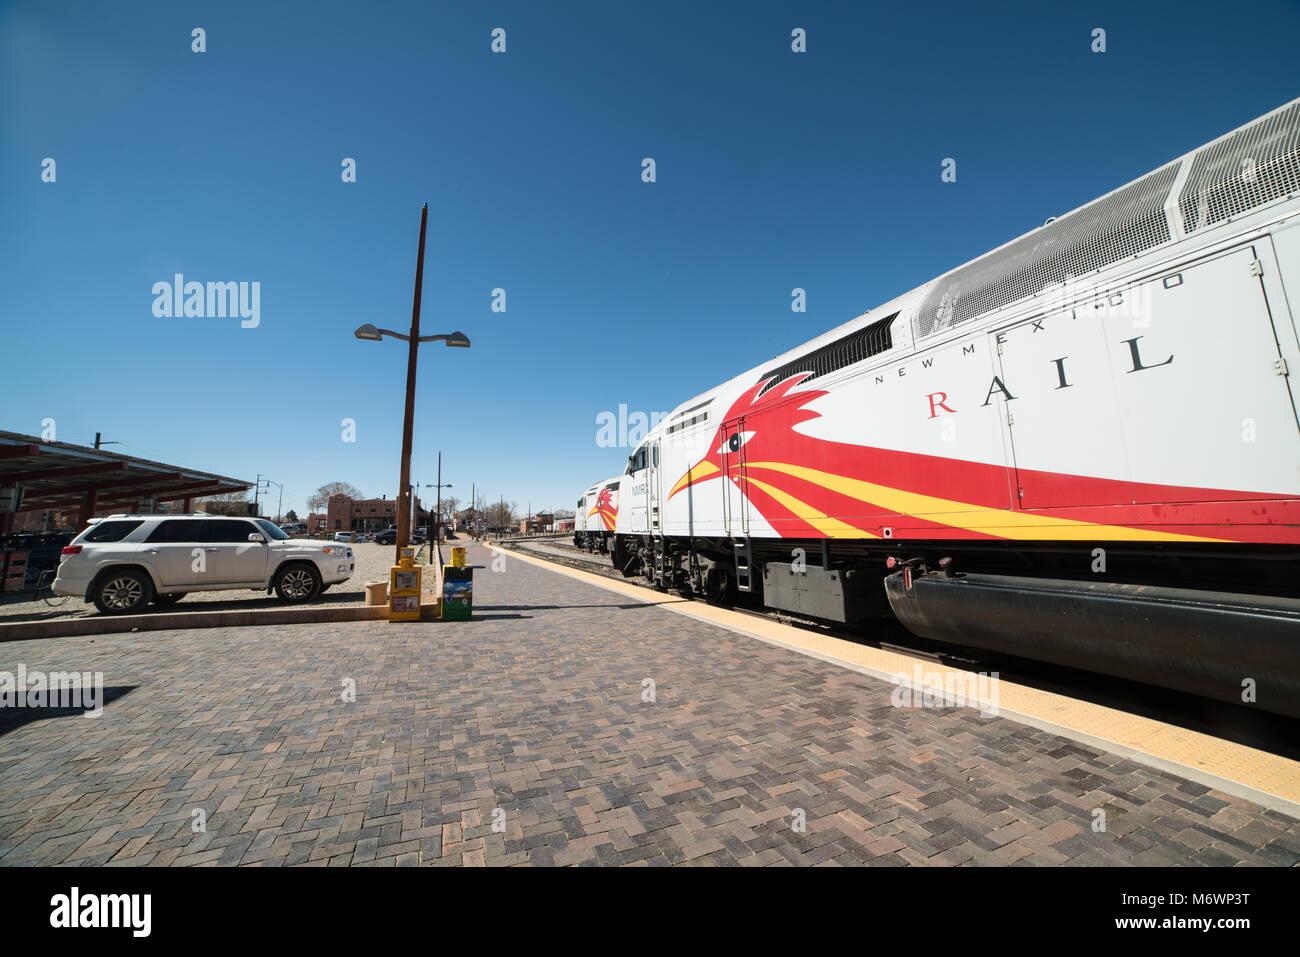 La rampa runner treno a Santa Fe, New Mexico stazione ferroviaria su un luminoso cielo blu nel pomeriggio. Foto Stock